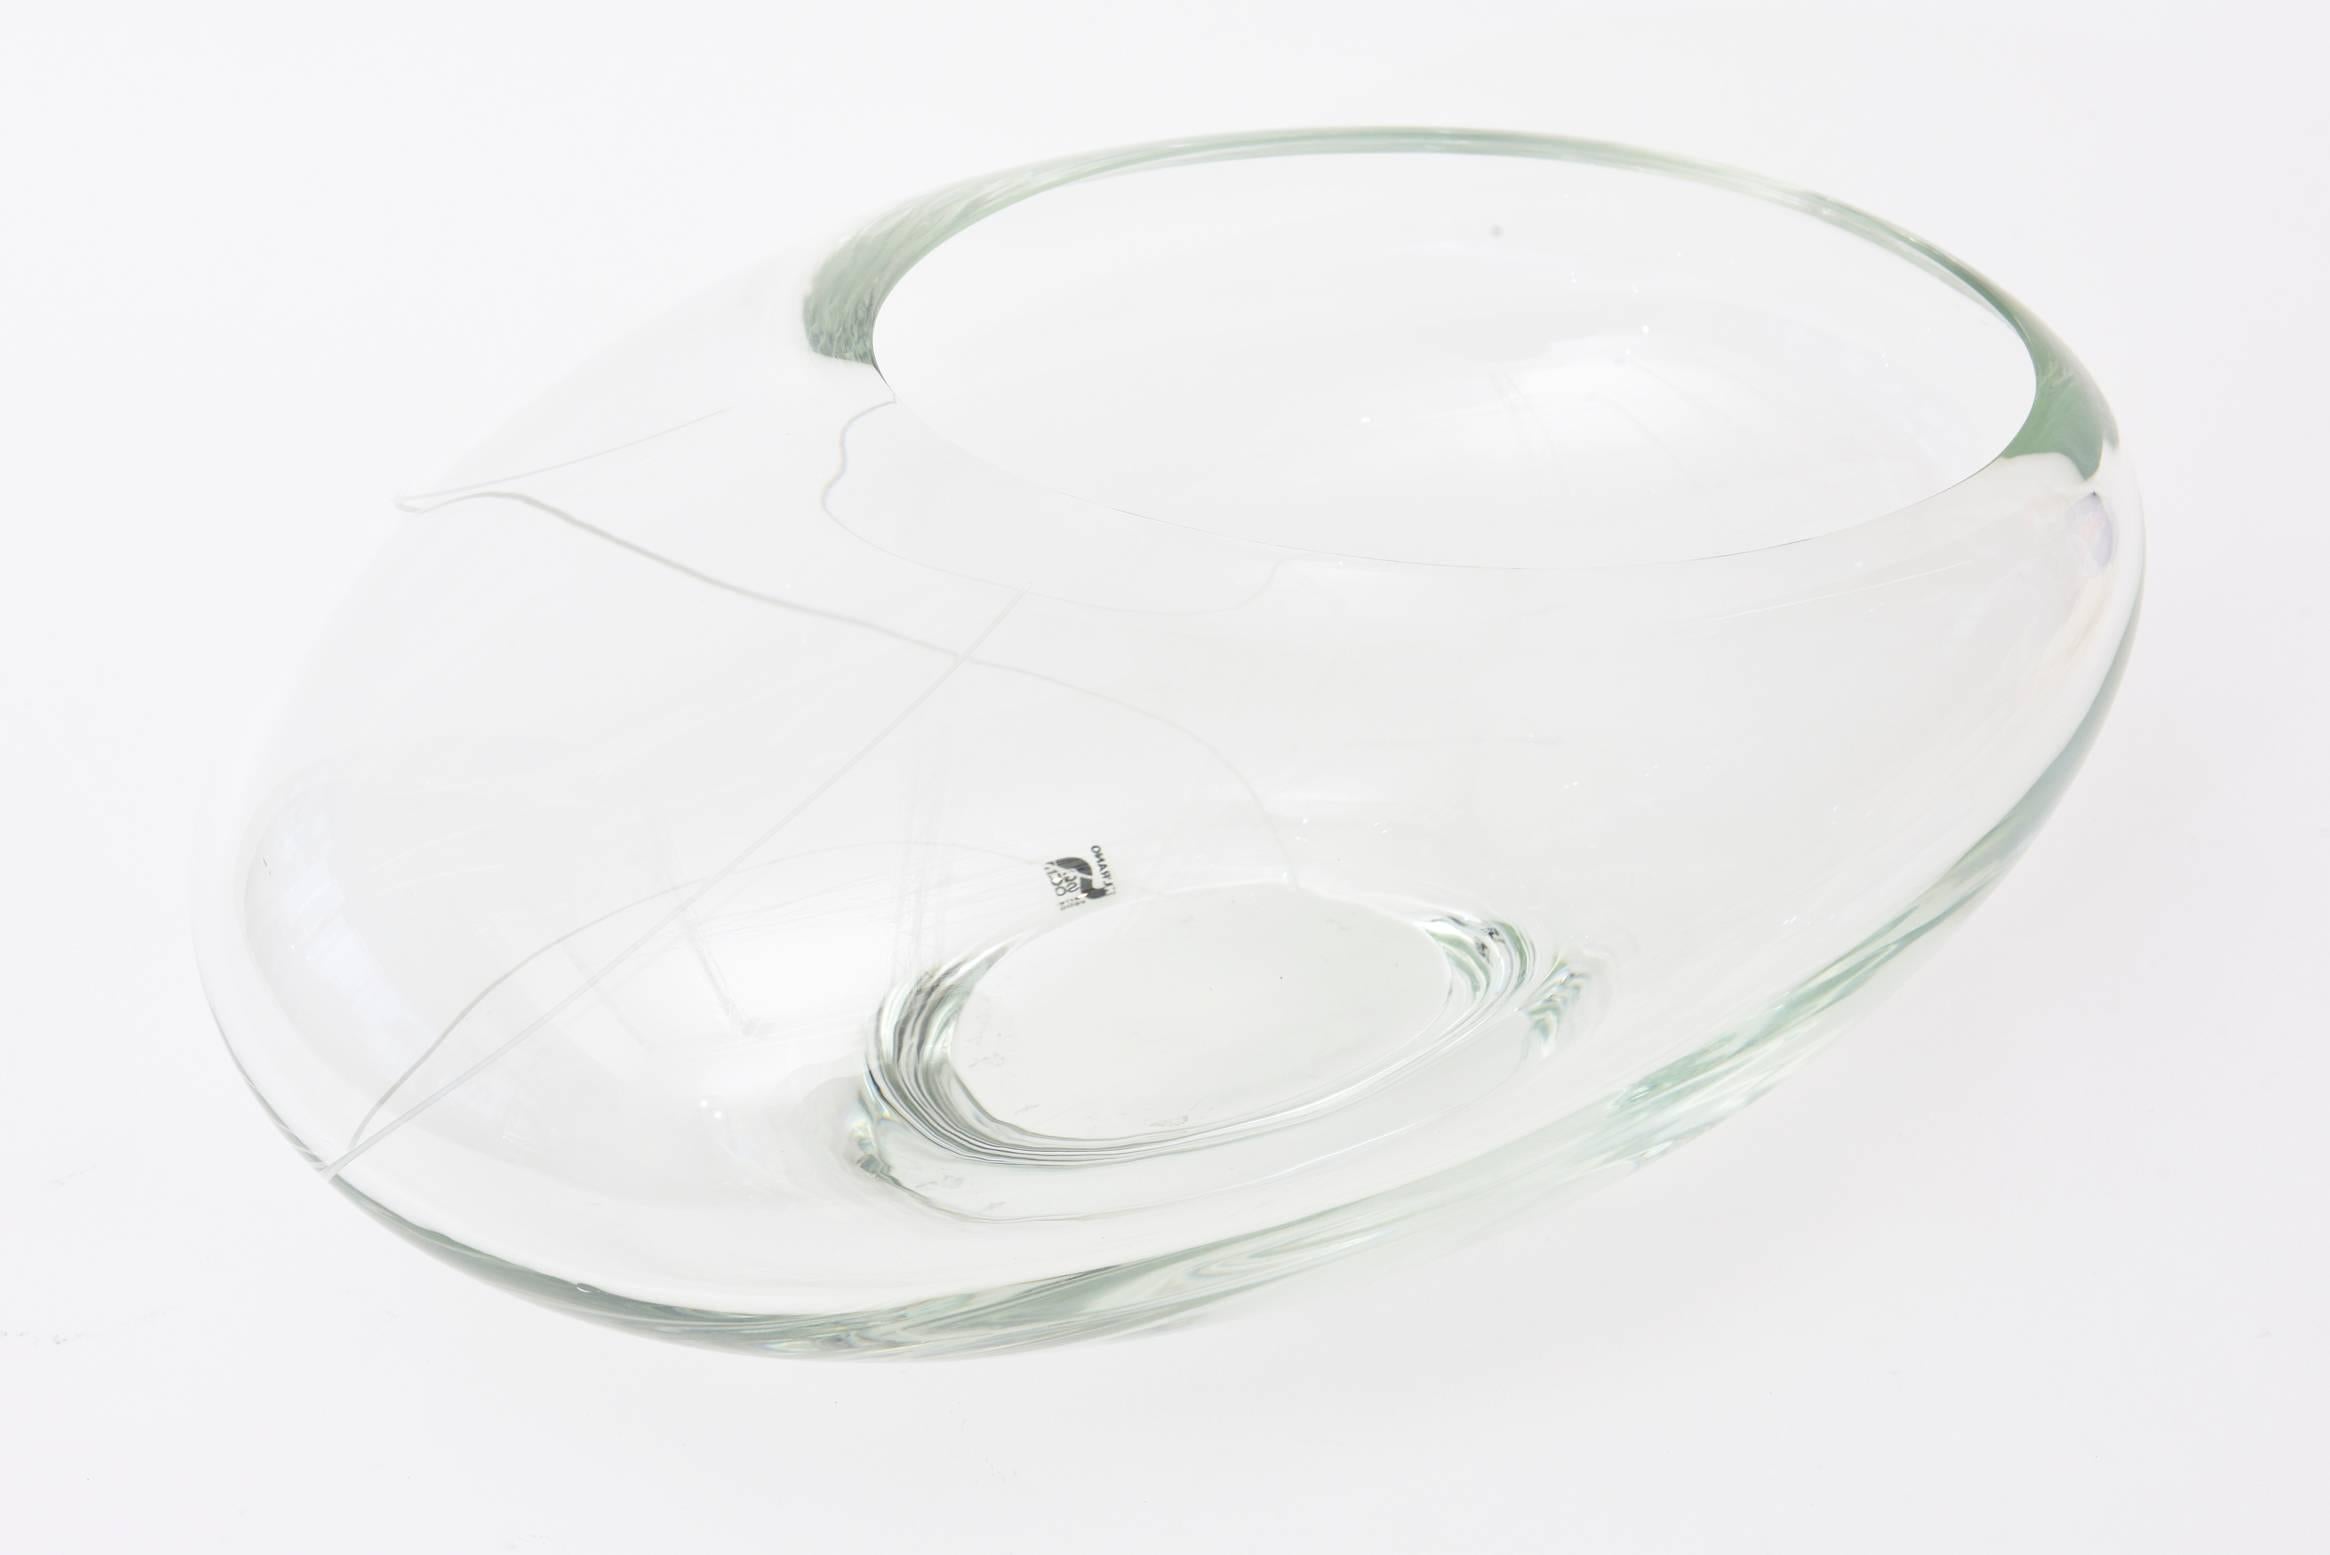 Italian Murano Seguso Glass Sculptural Asymmetrical Bowl or Vase or Centerpiece